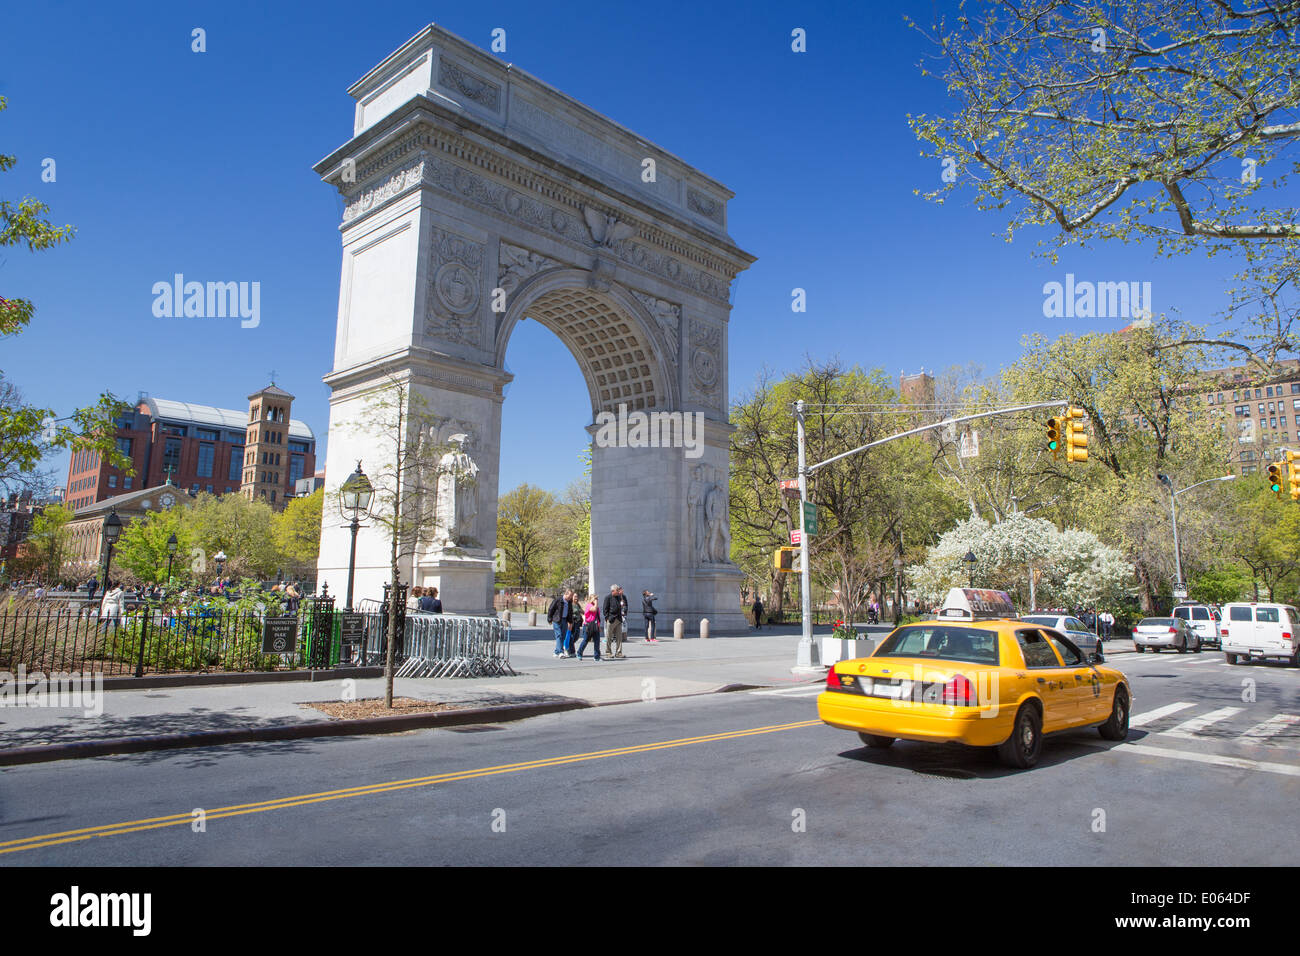 Washington Arch in the Washington Square Park, NYC, NY, USA Stock Photo